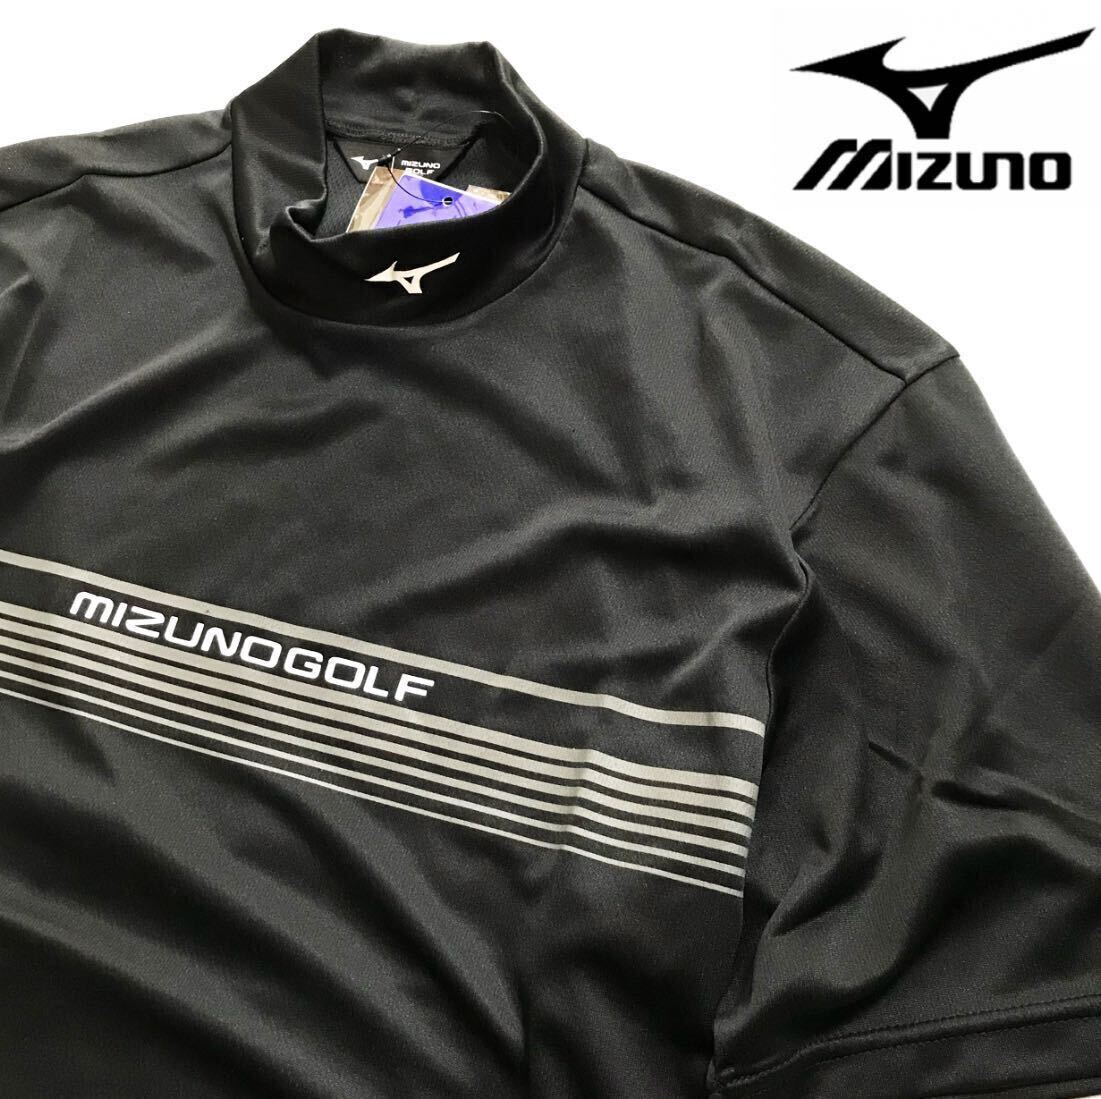 *z032 новый товар [ мужской XL] чёрный [MIZUNO GOLF] Mizuno Golf . пот скорость .DRY воротник Logo mok рубашка короткий рукав высокое качество один листов . "надеты" с высоким воротником 